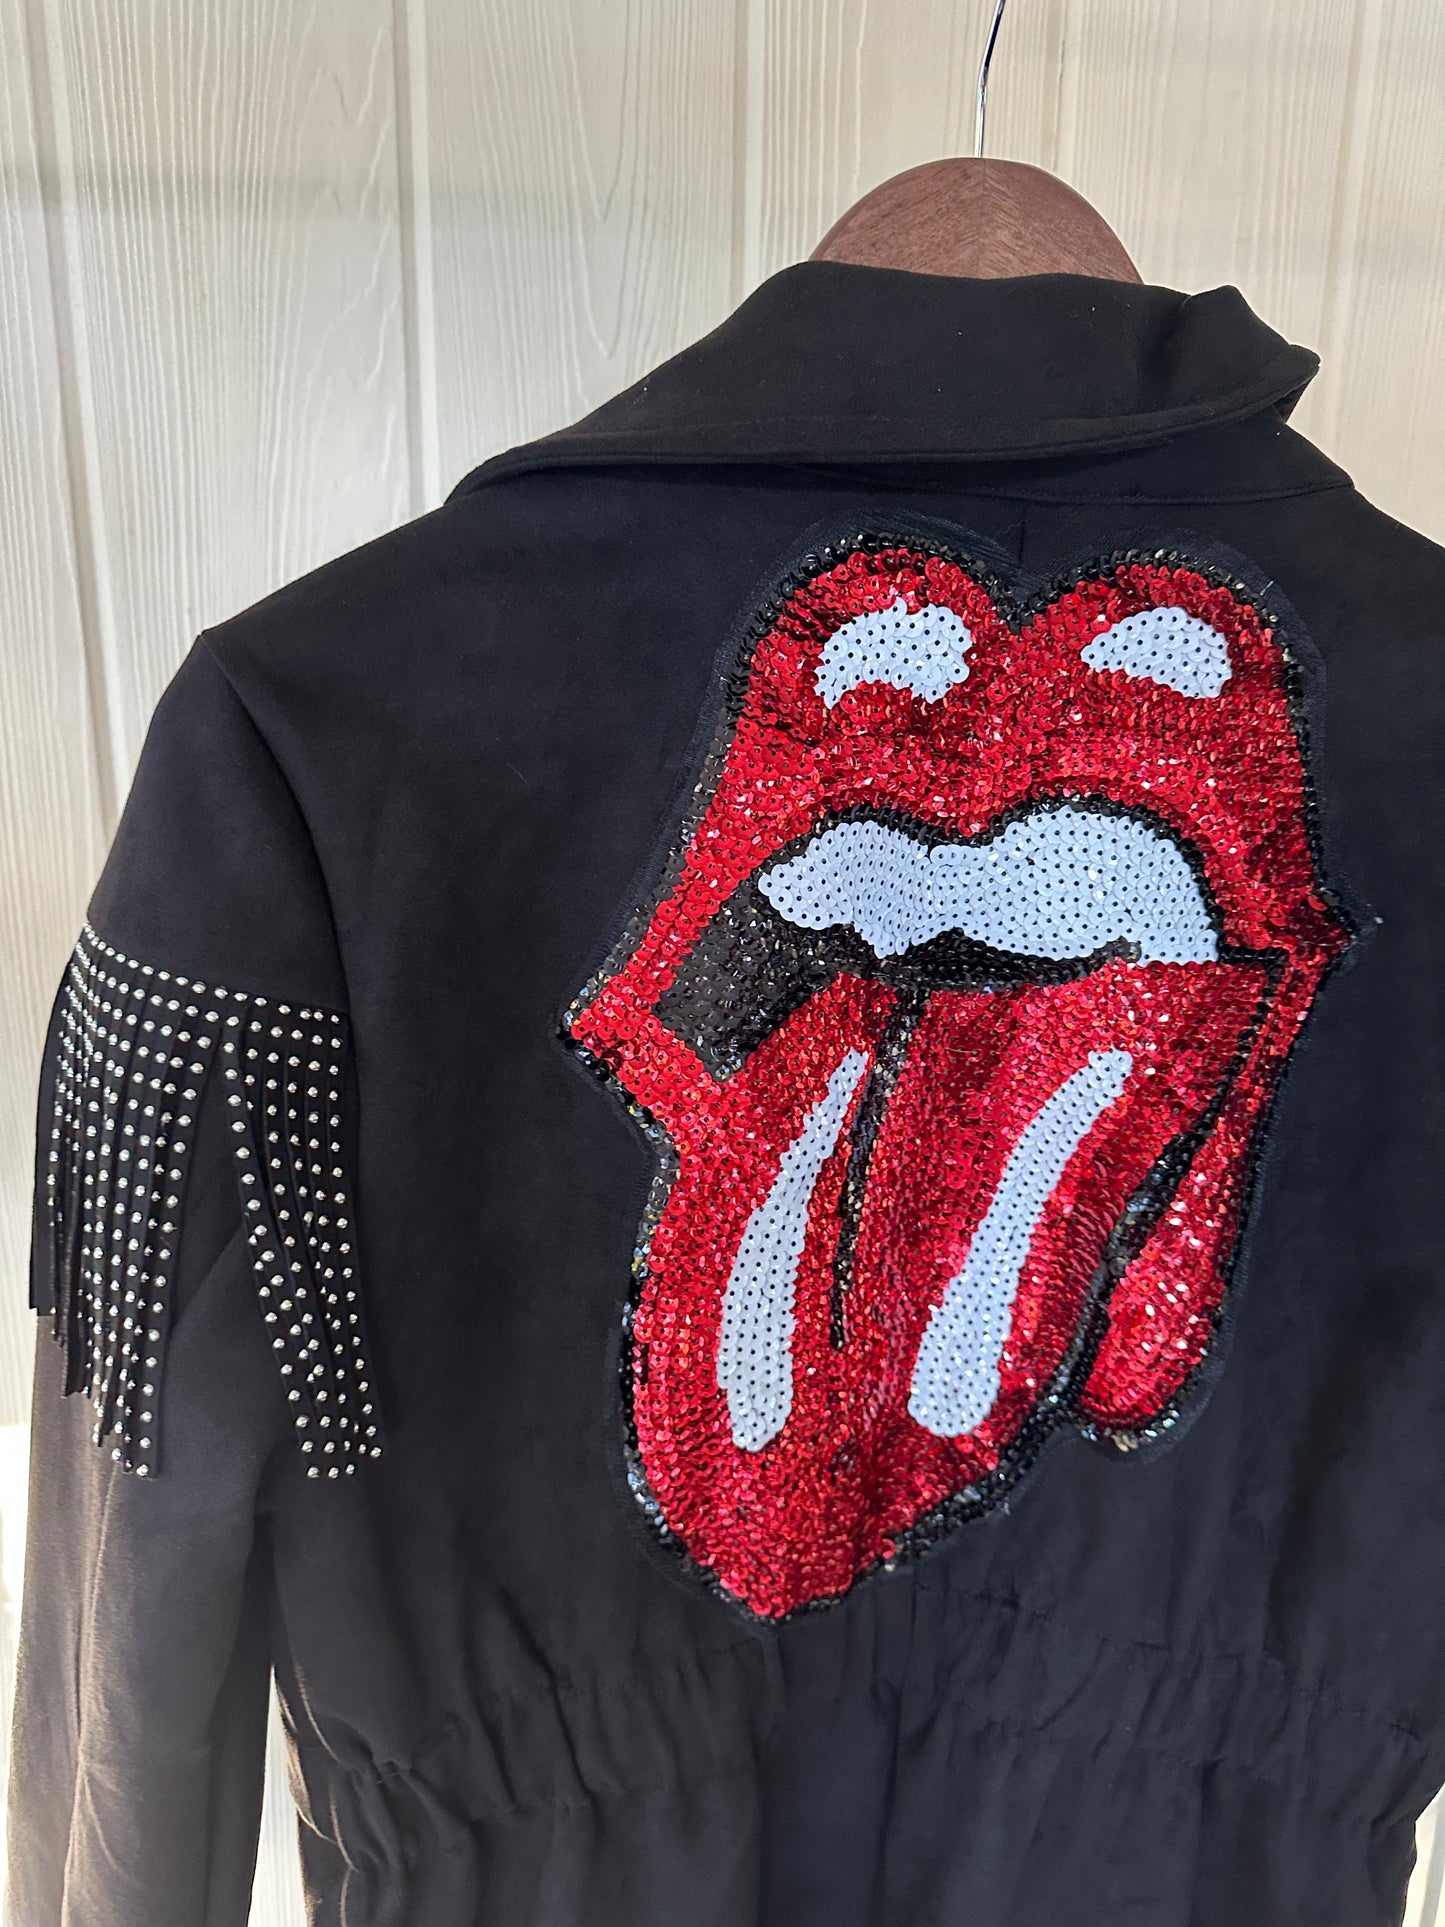 Rolling Stones Heavy Tassel Jacket Size M-L